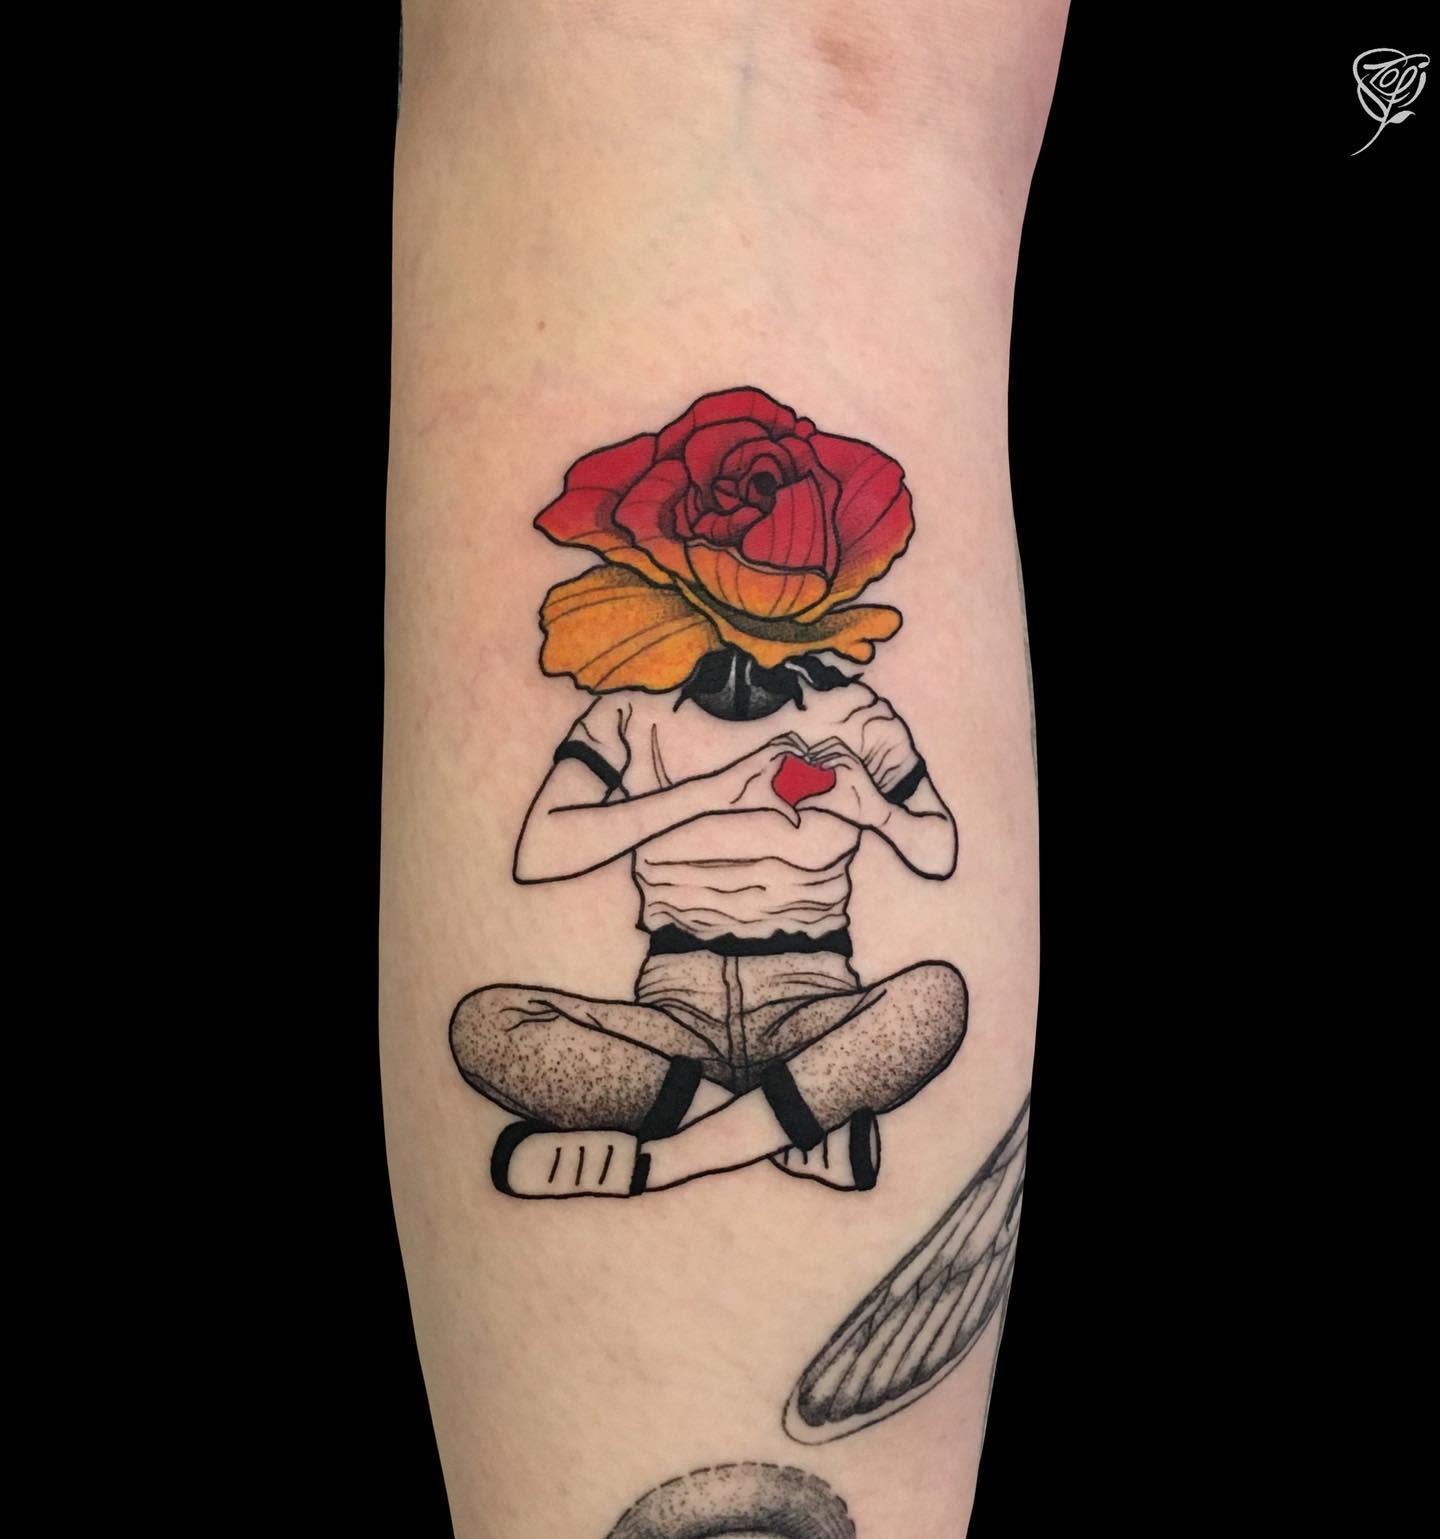 Self love rose tattoo - tattoobyszofi